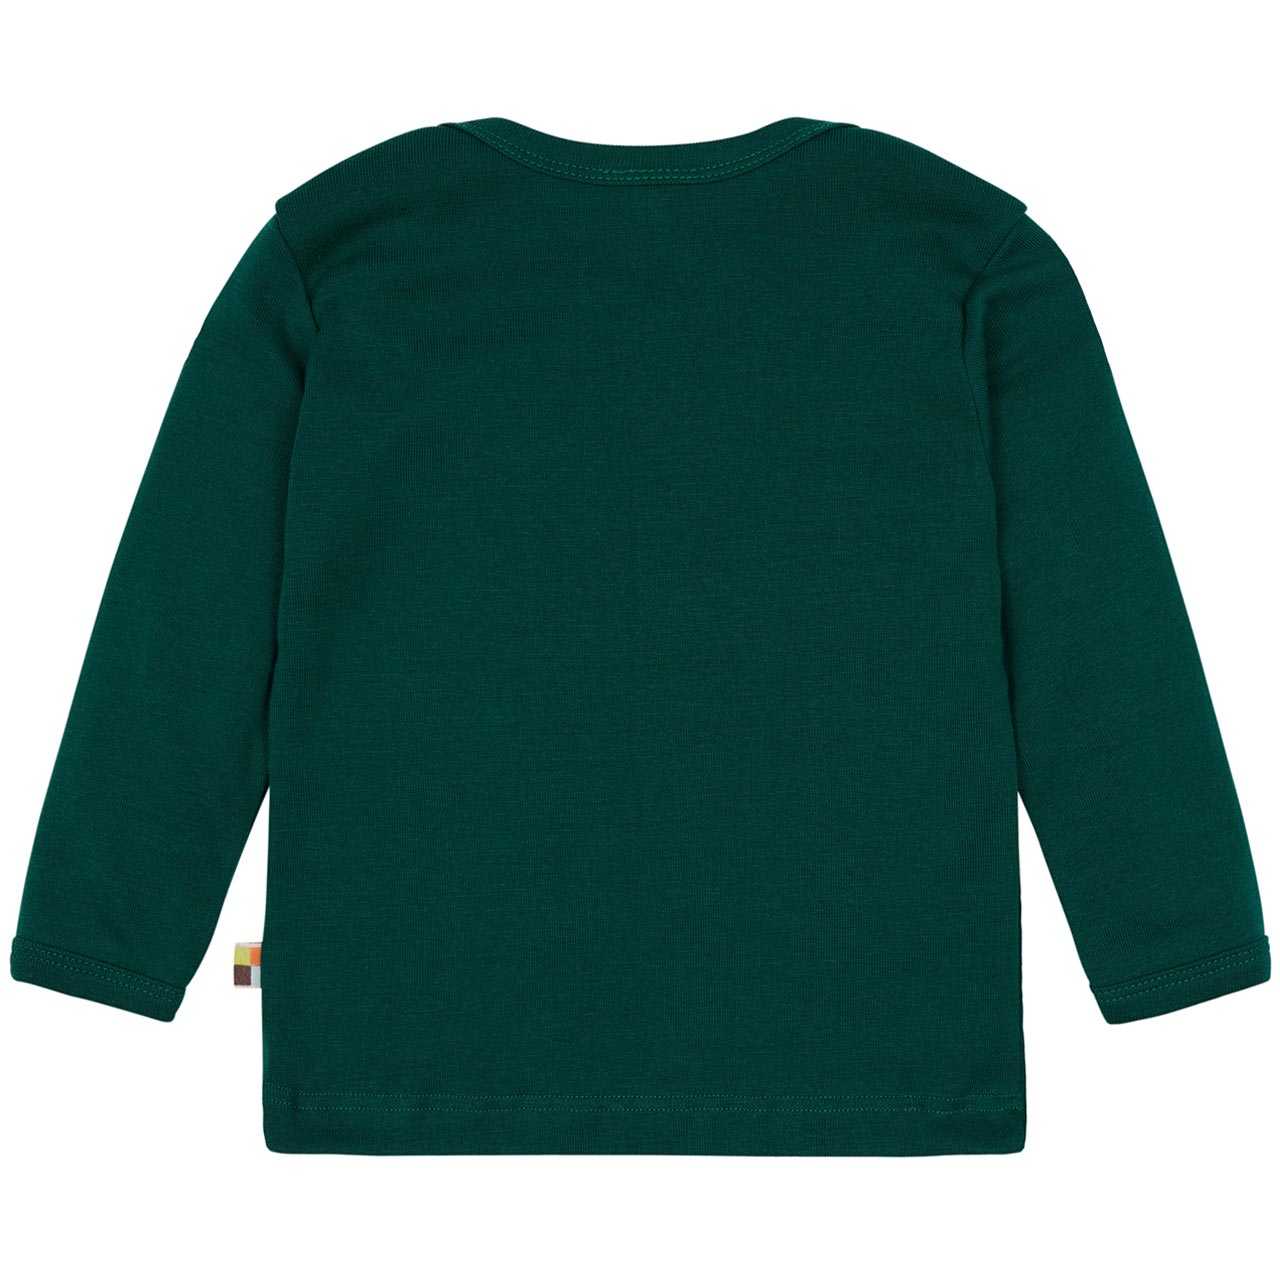 Feinripp Shirt weich und elastisch 100% Baumwolle dunkelgrün